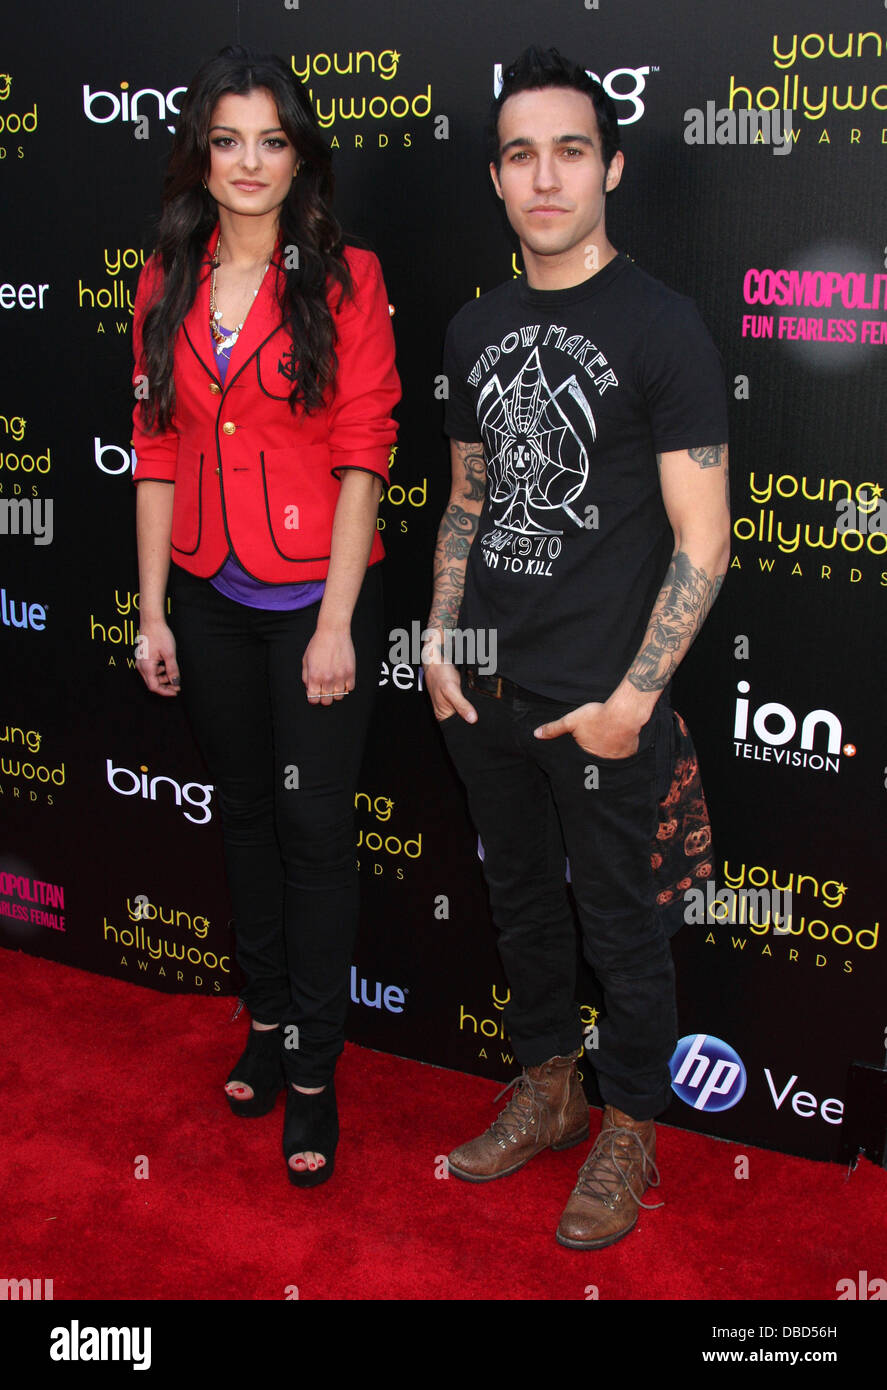 Bebe Rexha und Pete Wentz präsentiert den 13. Annual Young Hollywood Awards  von Bing bei Club Nokia - Ankünfte Los Angeles, Kalifornien - 20.05.11  Stockfotografie - Alamy